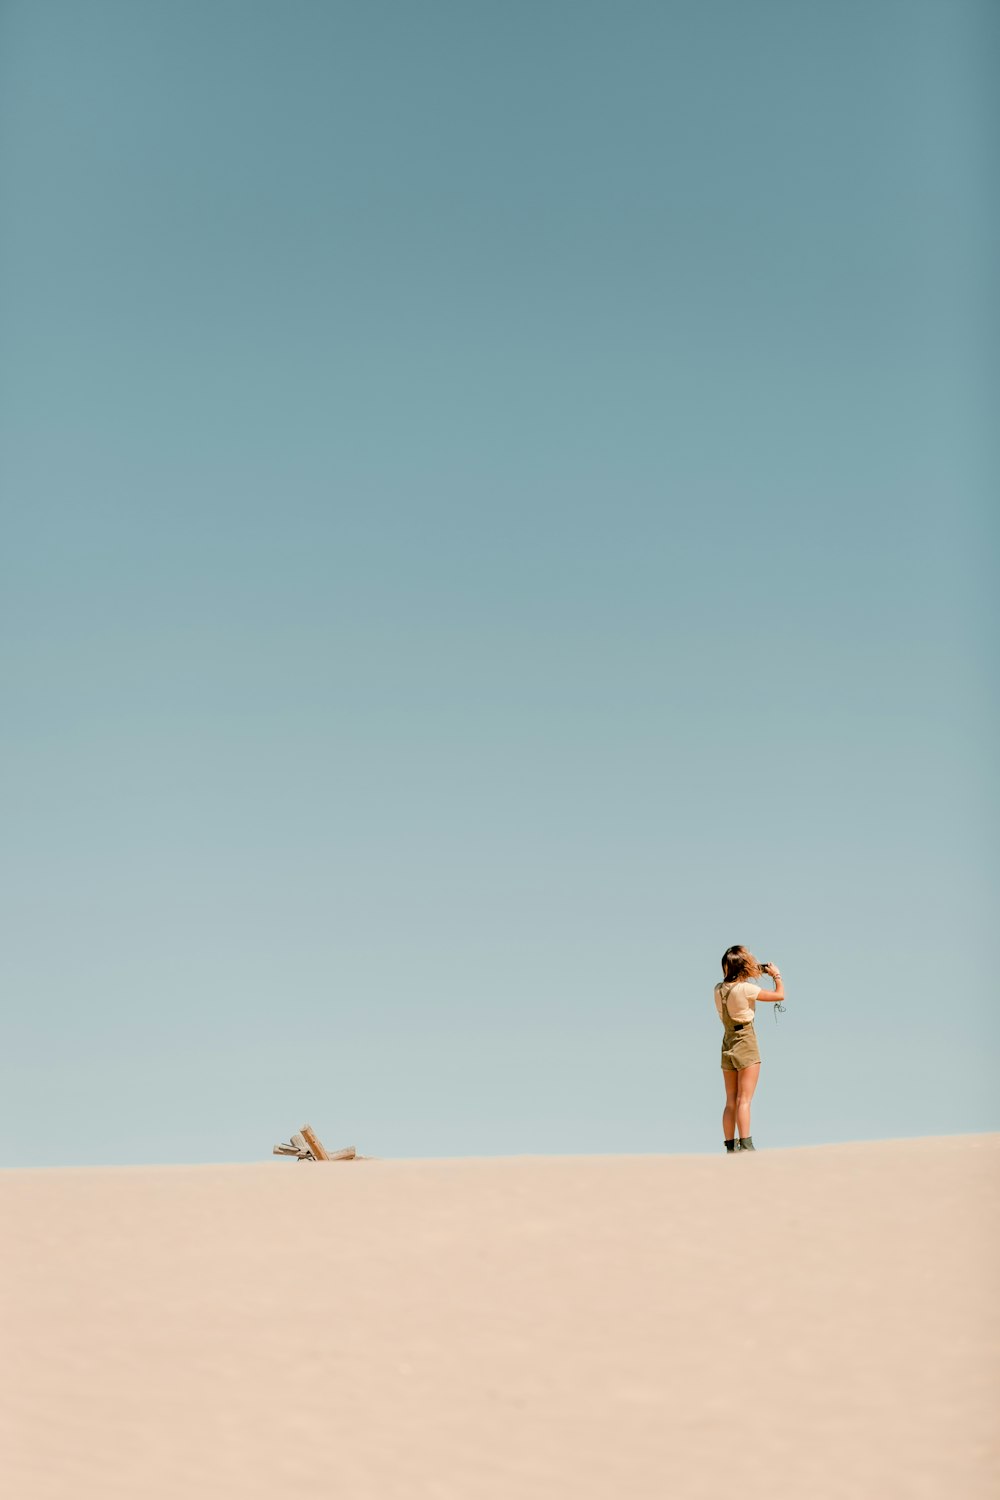 Persona con camiseta blanca de pie en el desierto durante el día